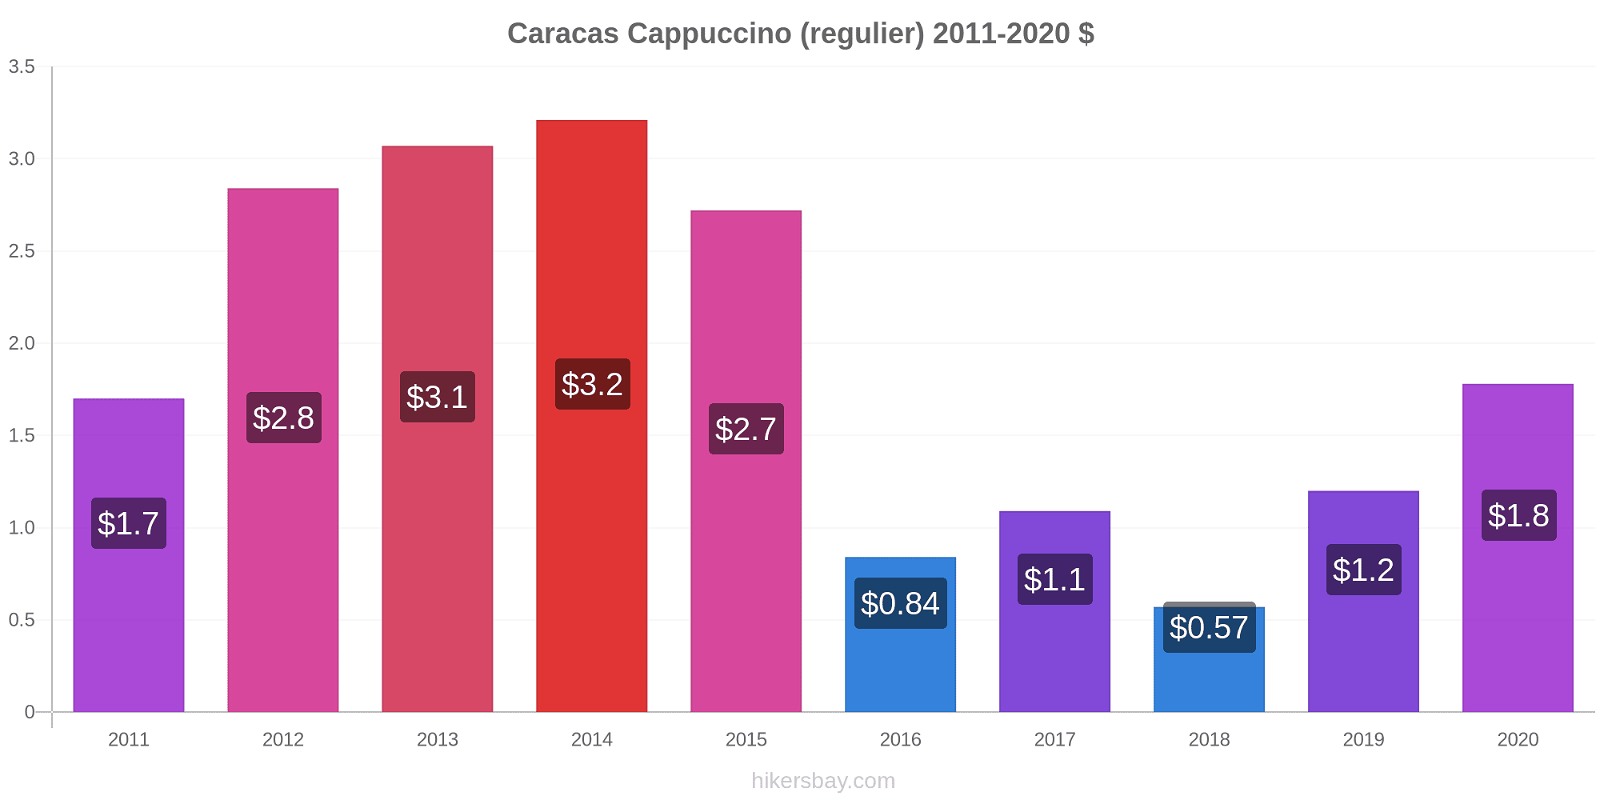 Caracas prijswijzigingen Cappuccino (regelmatige) hikersbay.com